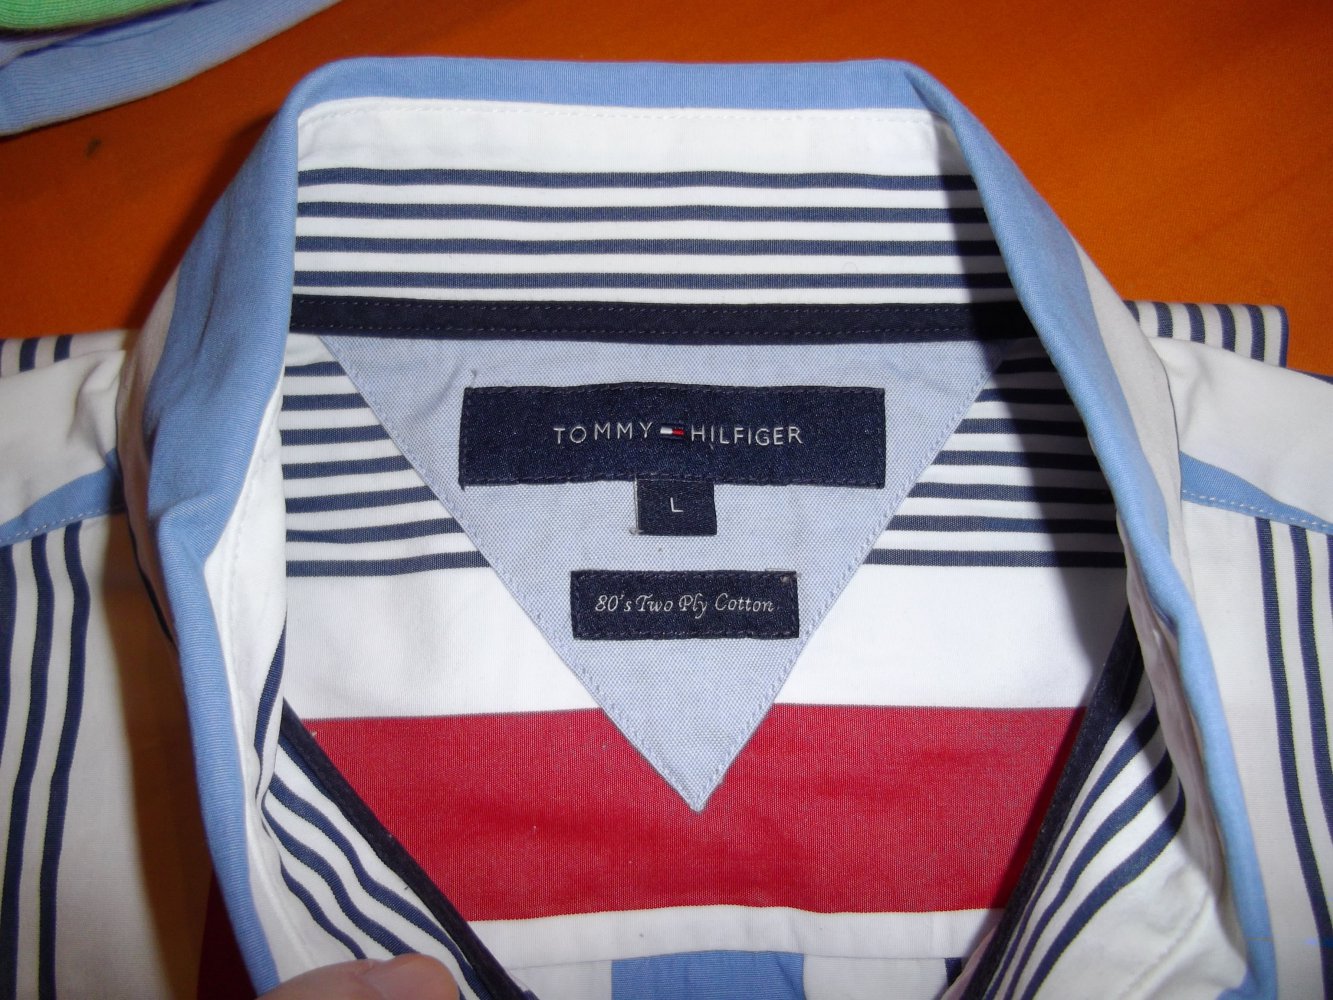 Tommy Hilfiger 80´s Two Ply Cotton Hemd rot blau marine weiß Blockstreifen in Gr.L